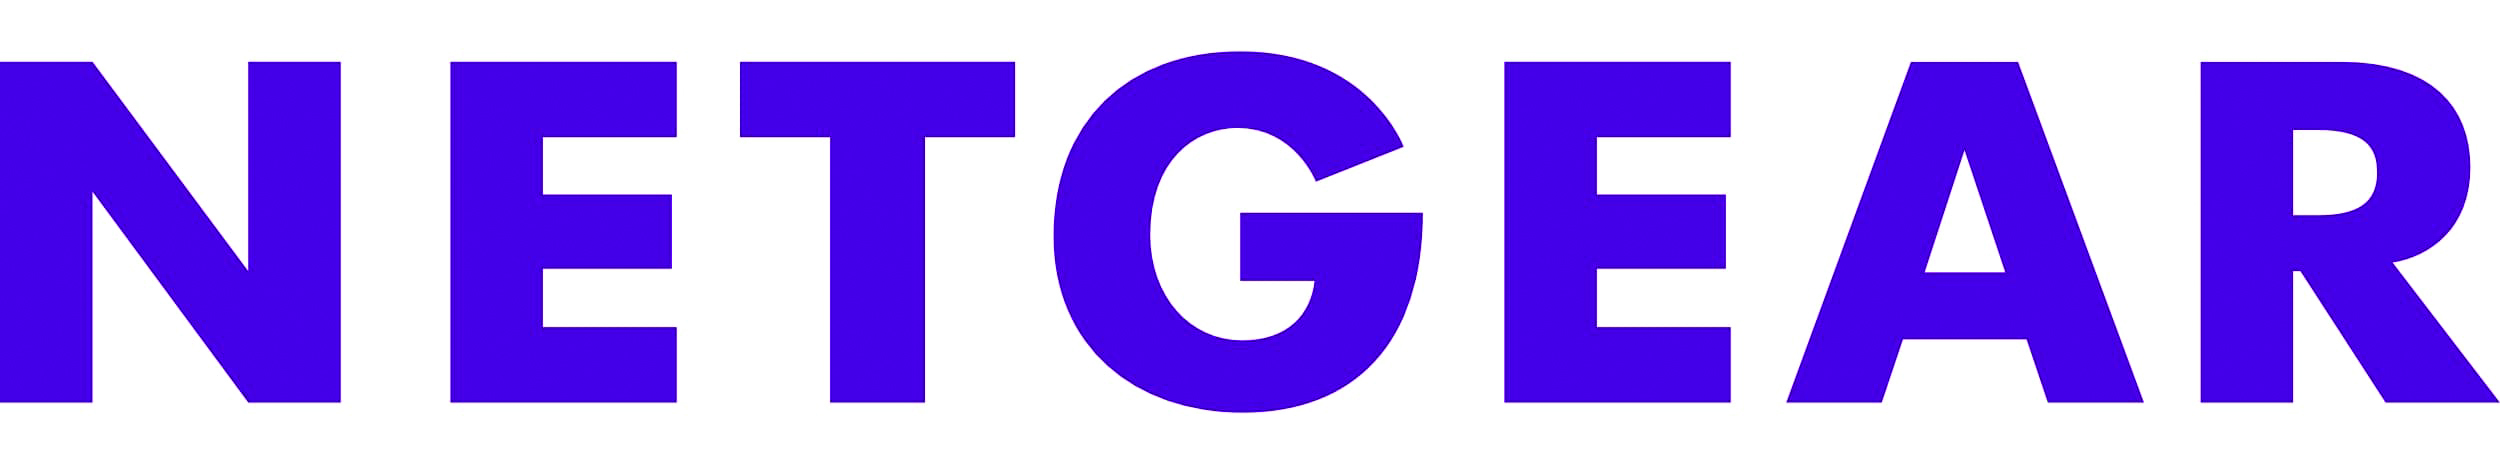 Netgear-logo